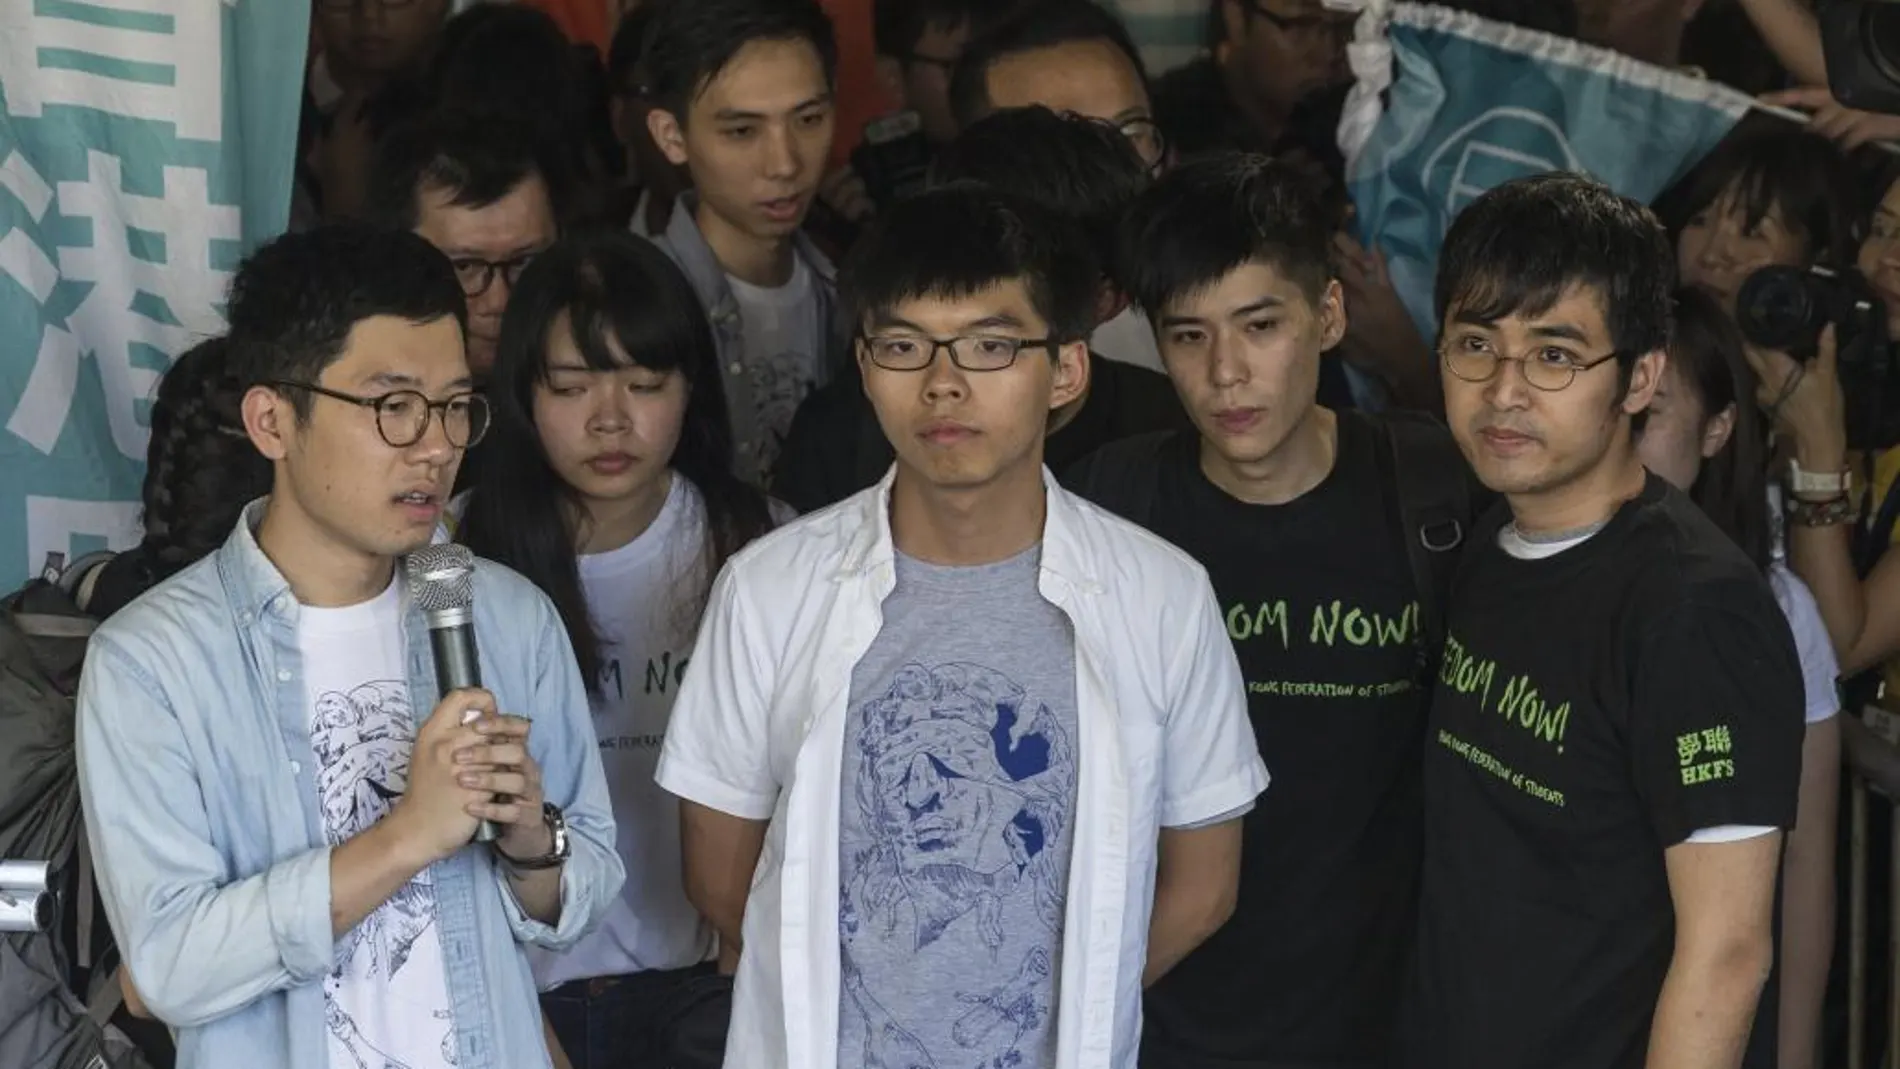 Los líderes estudiantiles Nathan Law (c), Joshua Wong (c) y Alex Chow (dcha) condenados hoy